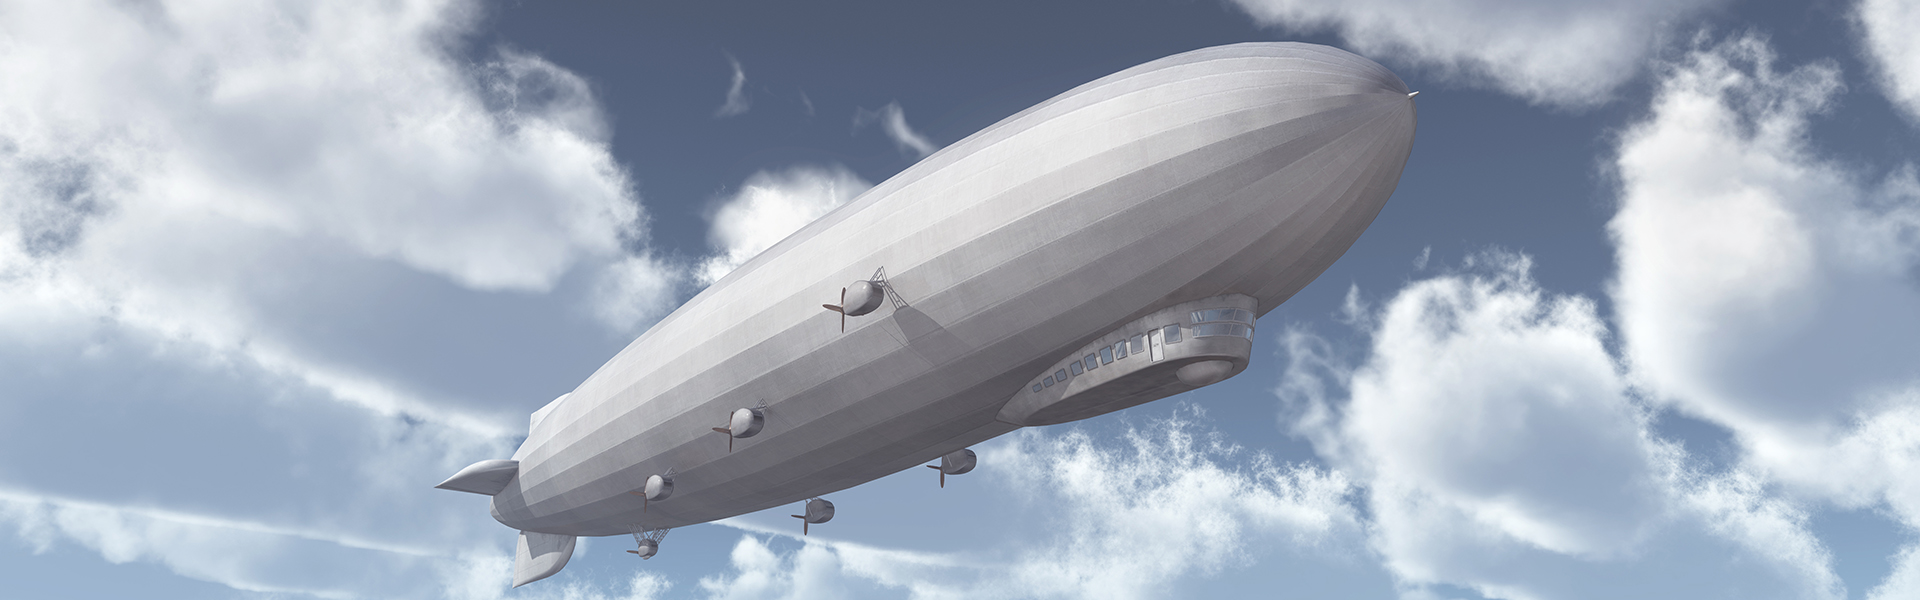 Zeppelin in der Luft